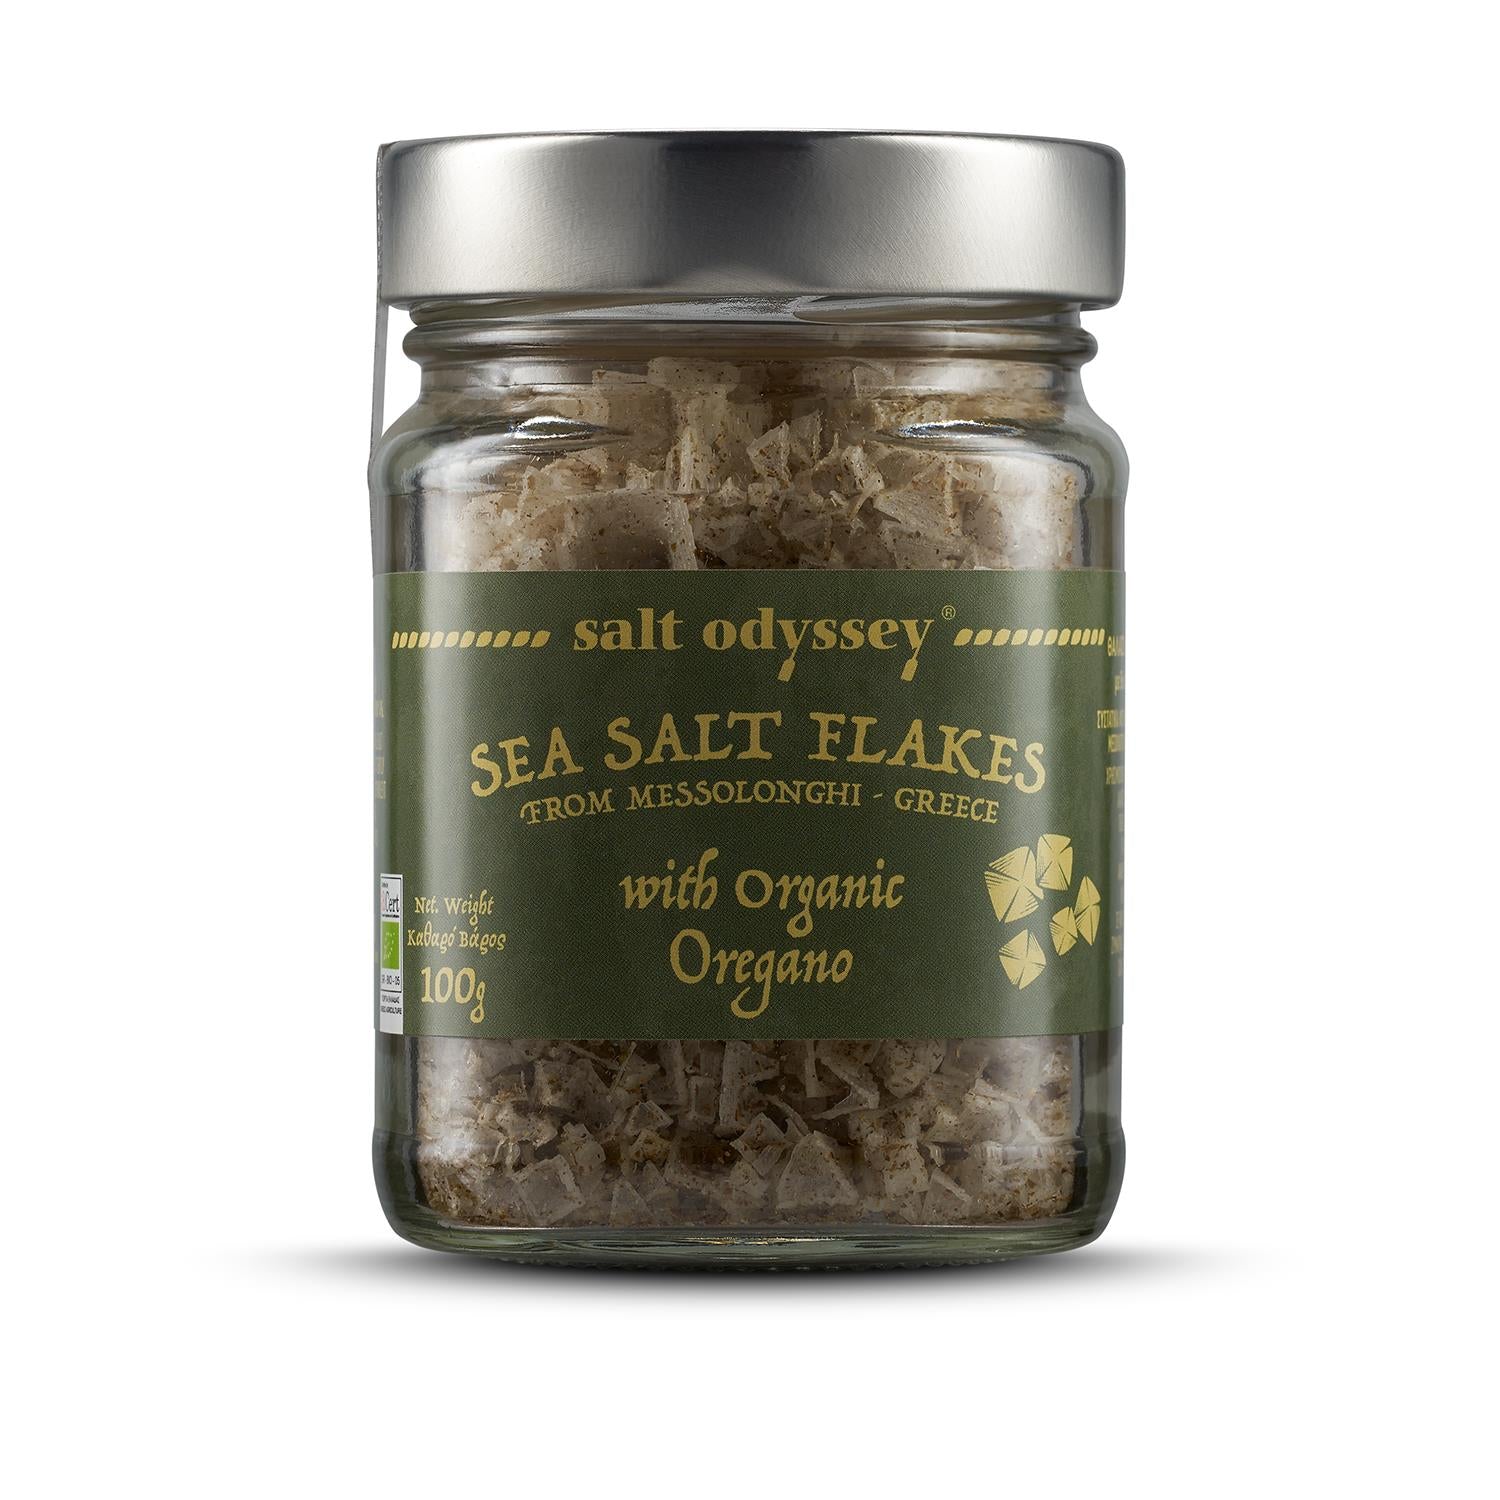 Oregano salt flakes - 100g